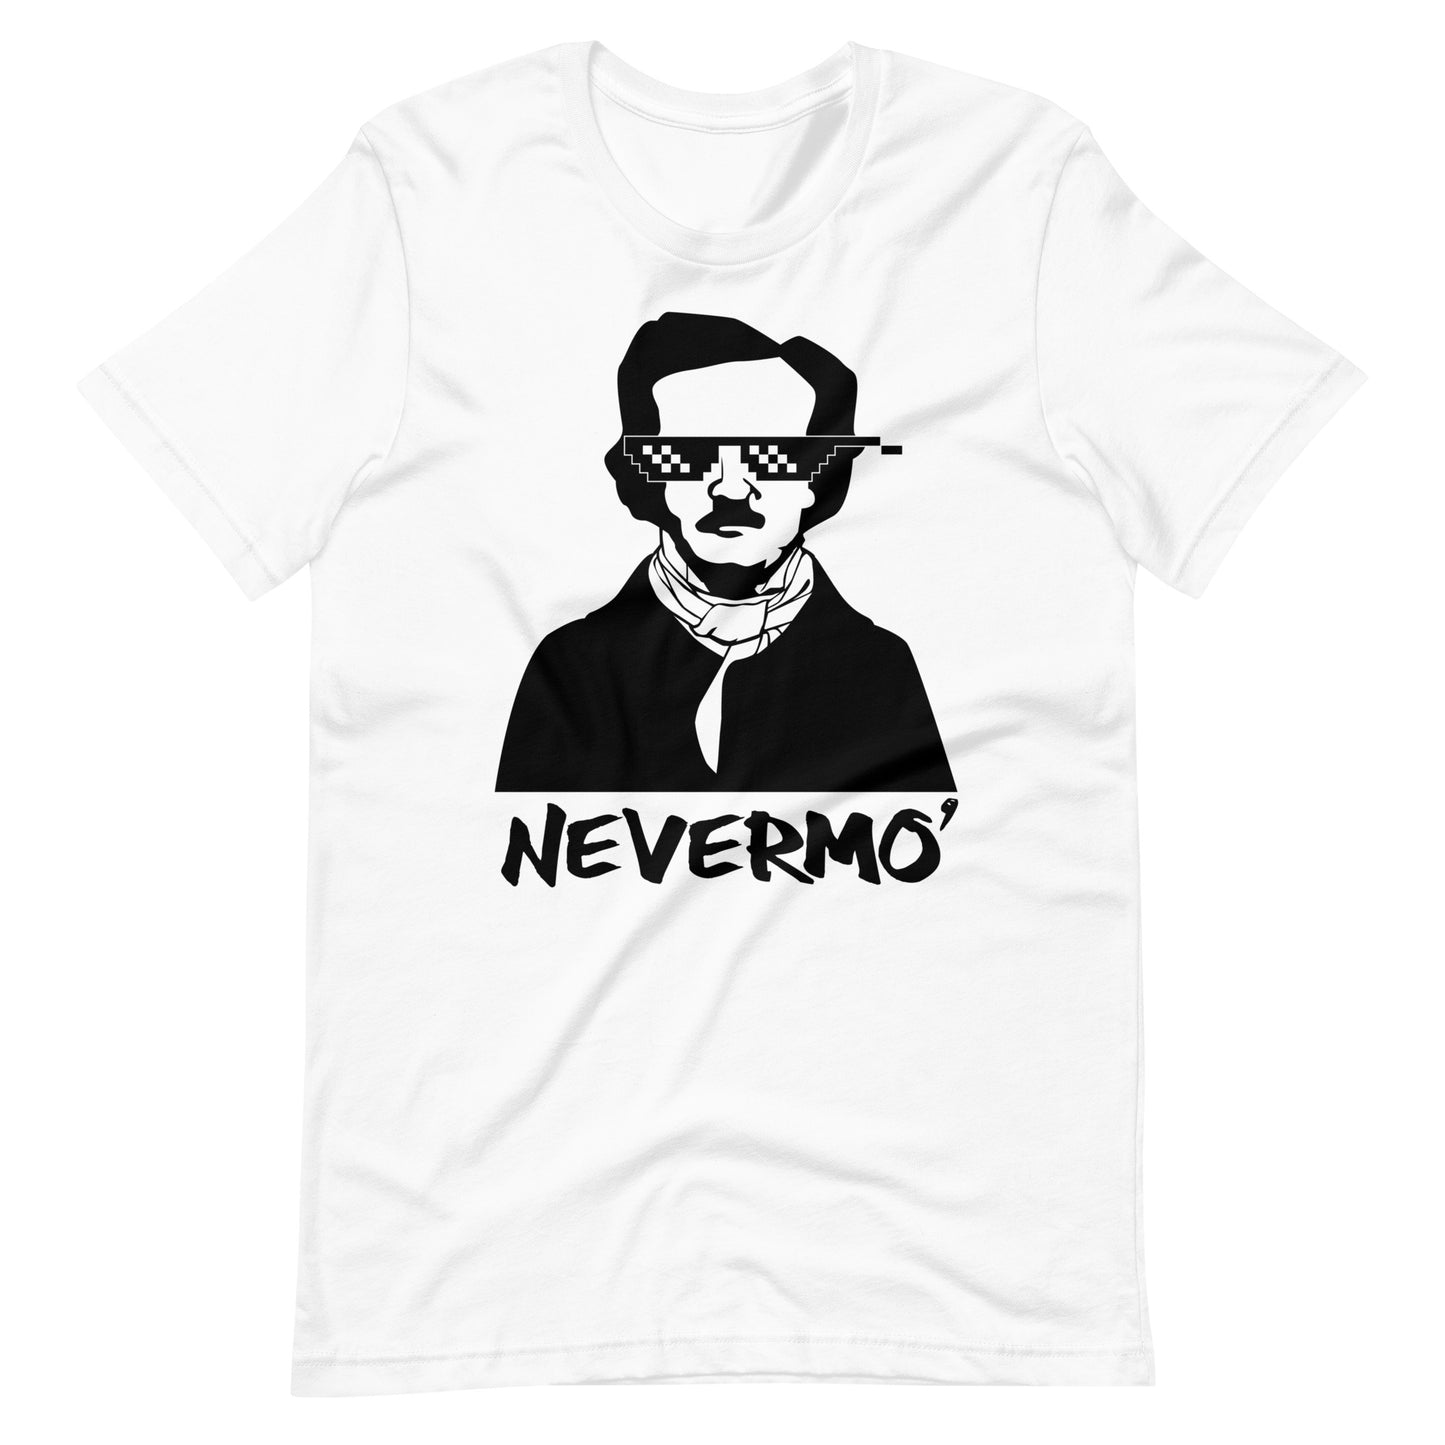 Men's Edgar Allan Poe "The Nevermo" T-Shirt - White Front